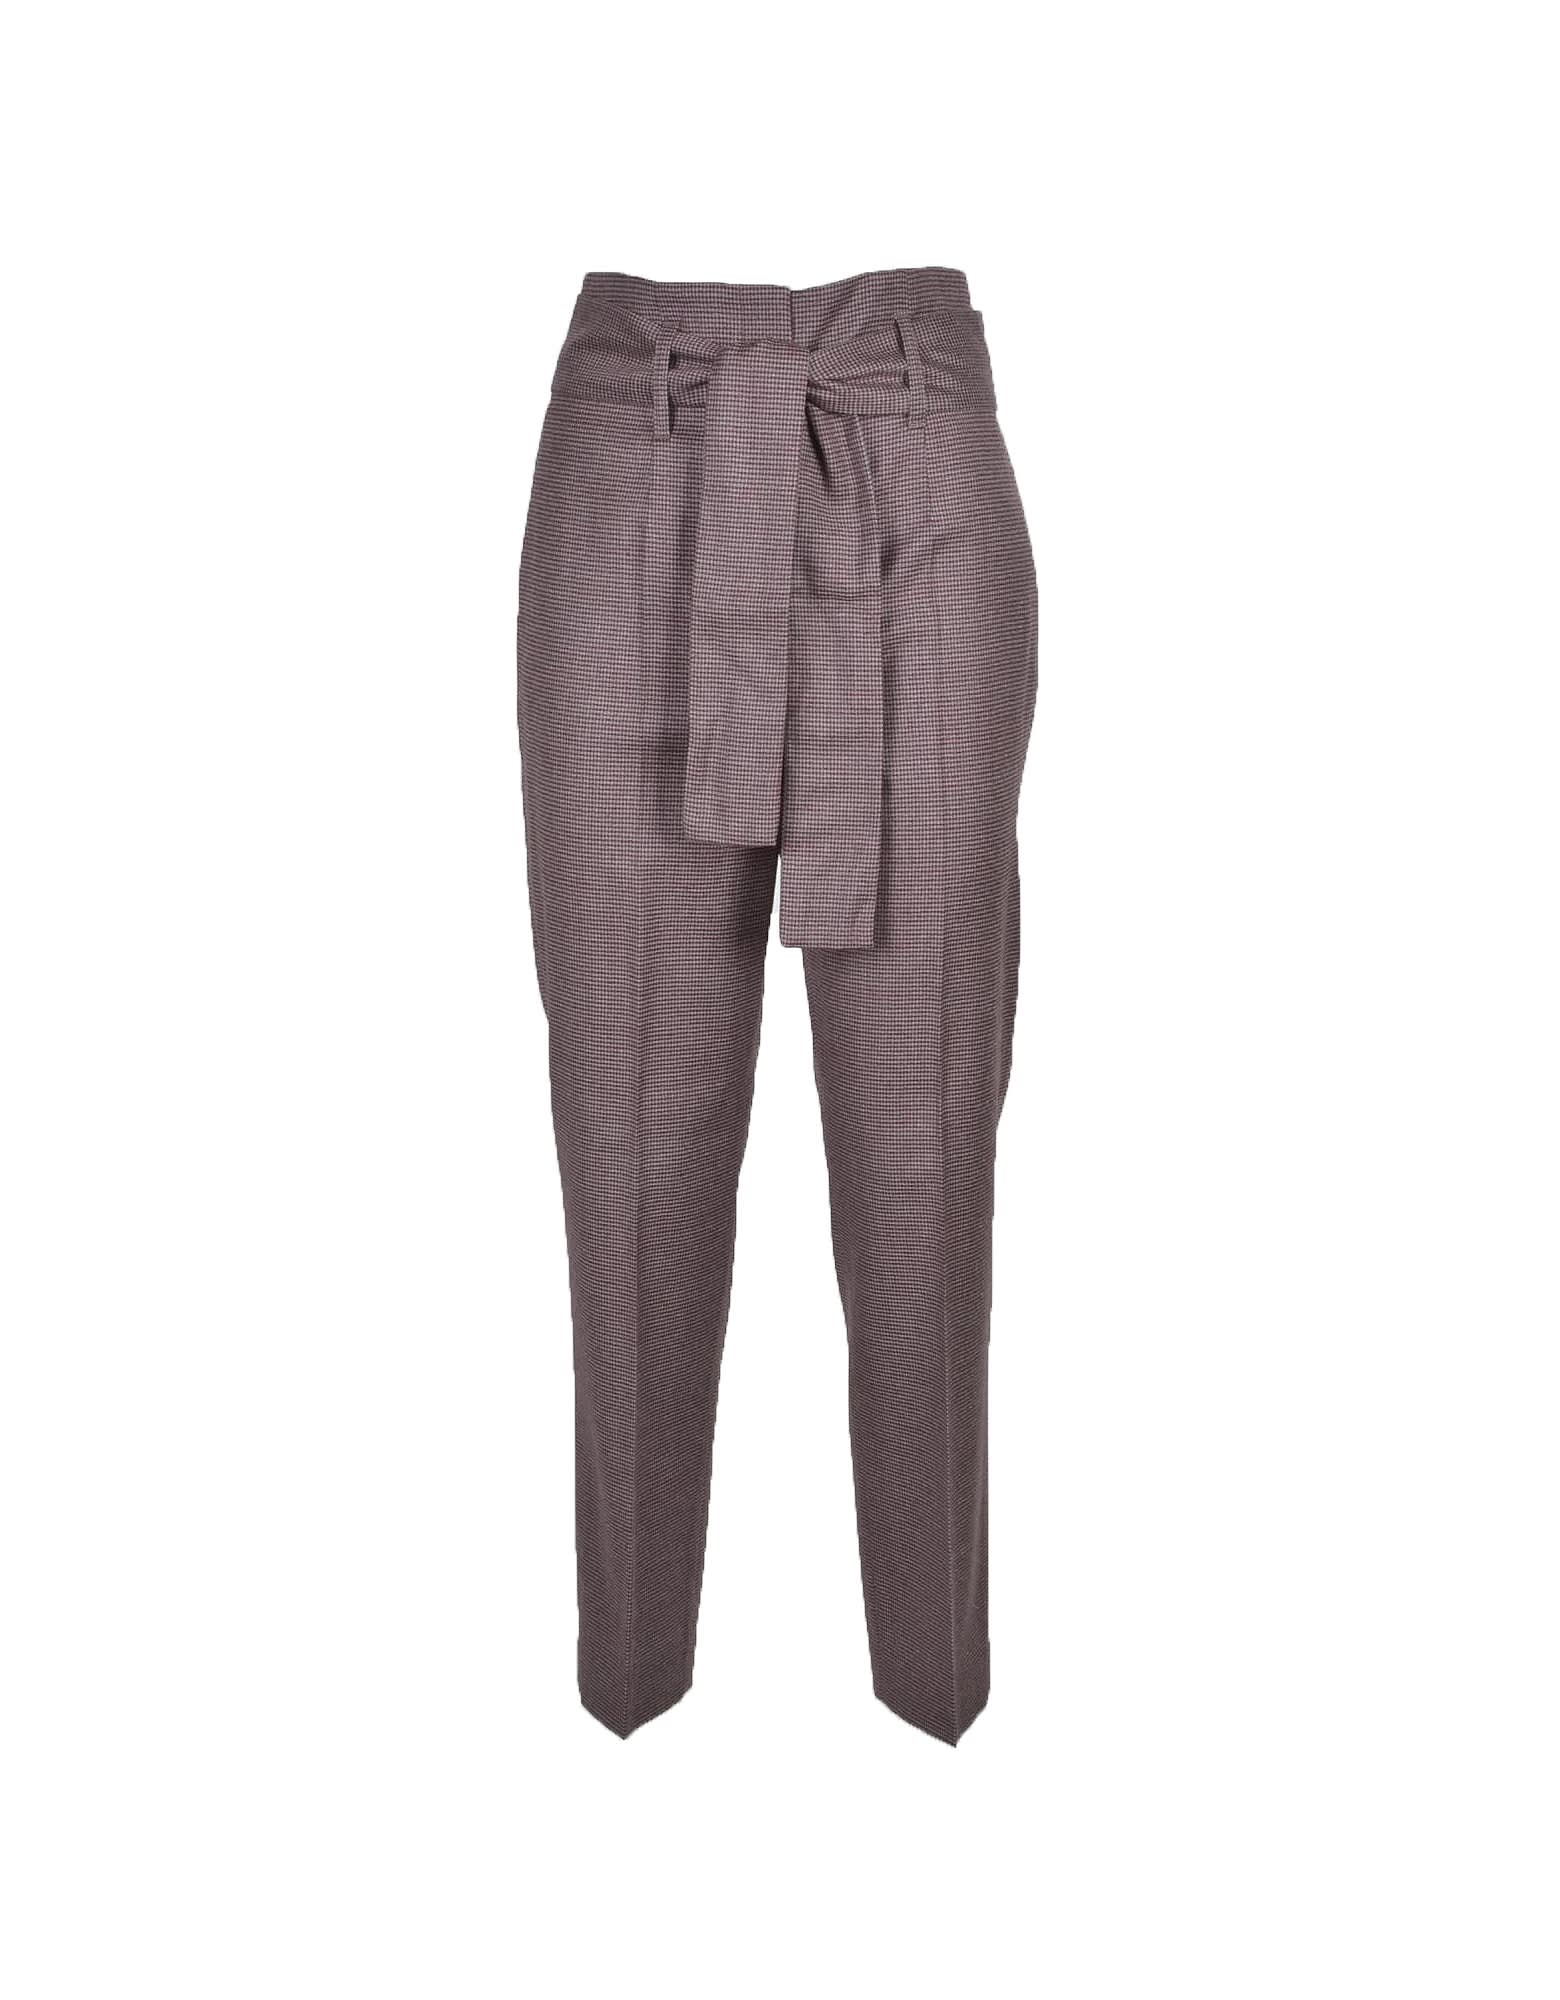 Fabiana Filippi Womens Gray / Bordeaux Pants